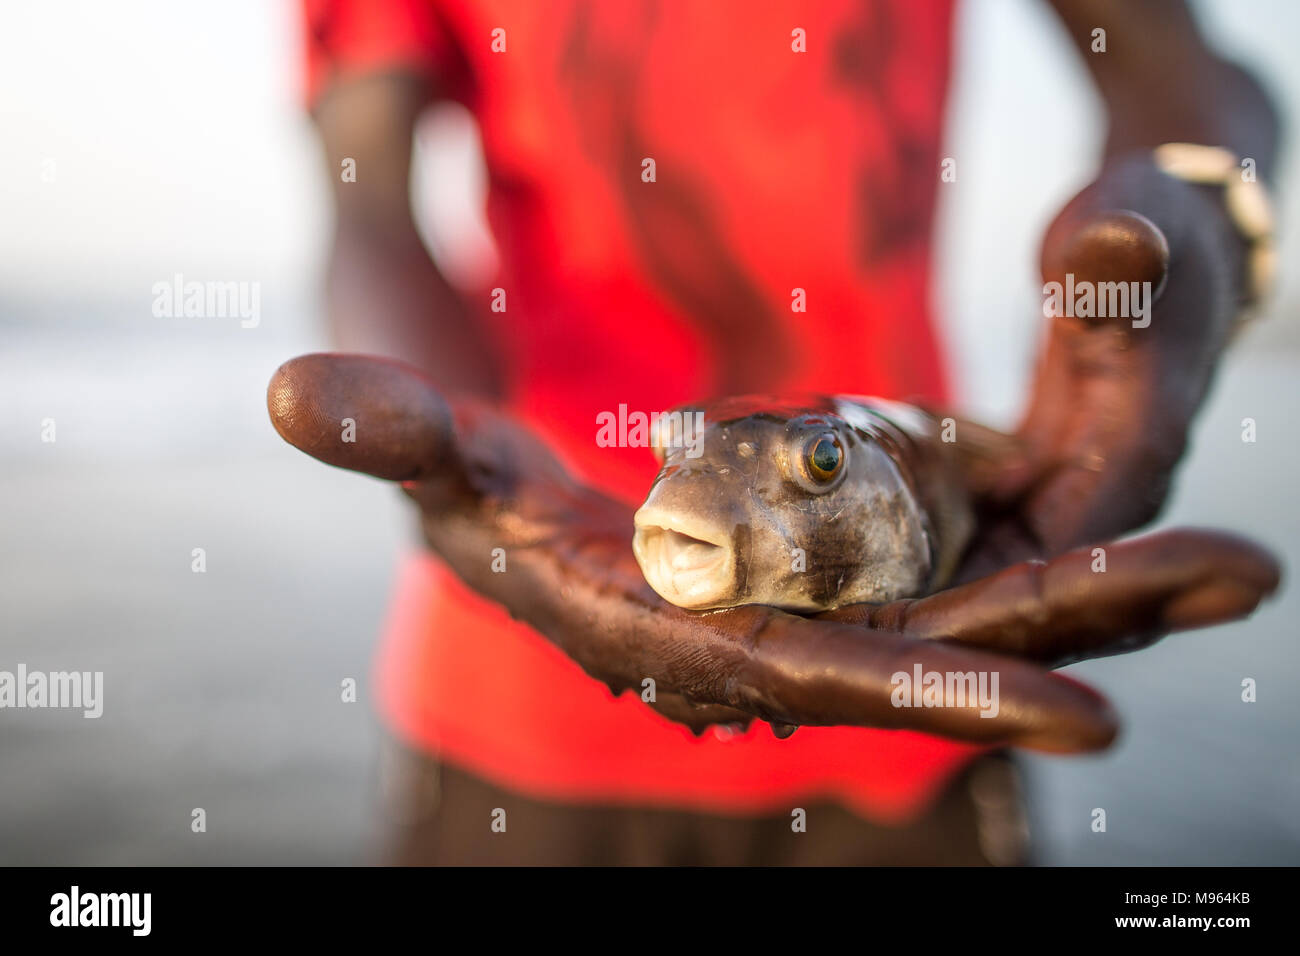 Un poisson-globe est titulaire d'un local après avoir été pris par un pêcheur. Poisson-globe peut être mortelle si elle n'est pas cuit correctement, pour jeter une fois attrapé. sont Kotu, la Gambie. Banque D'Images